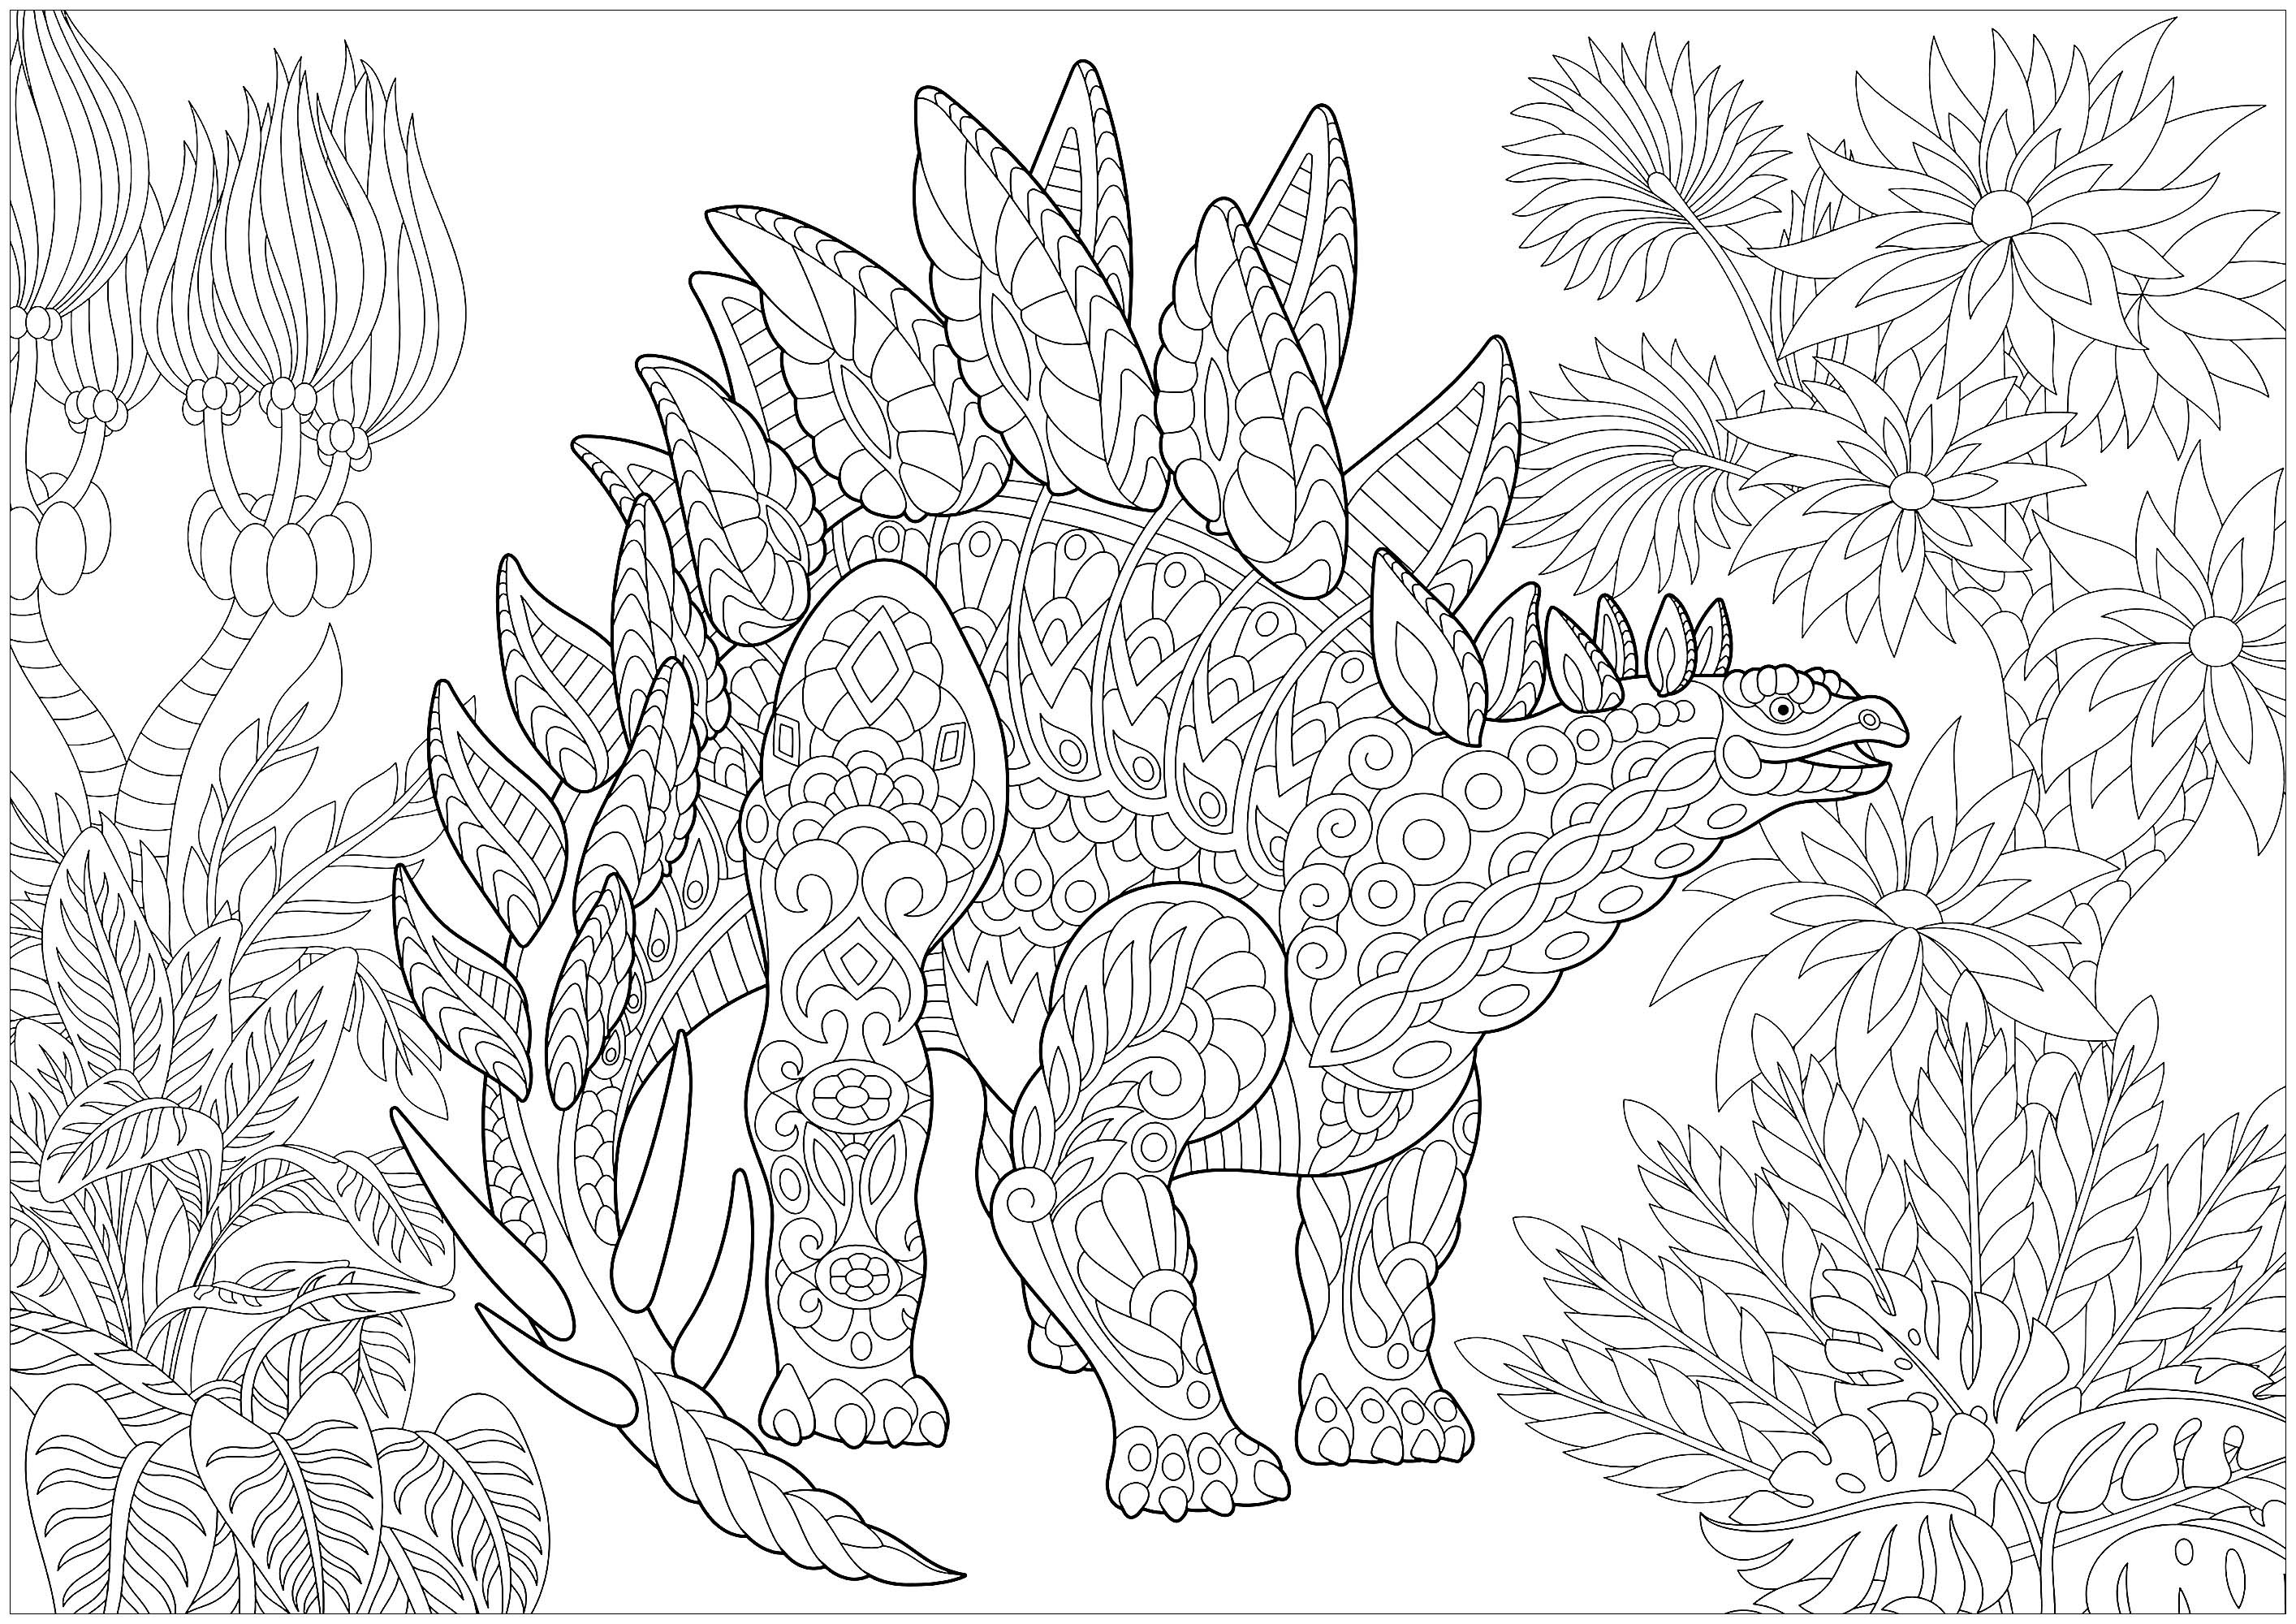 Desenhos para colorir gratuitos de Dinossauros para baixar